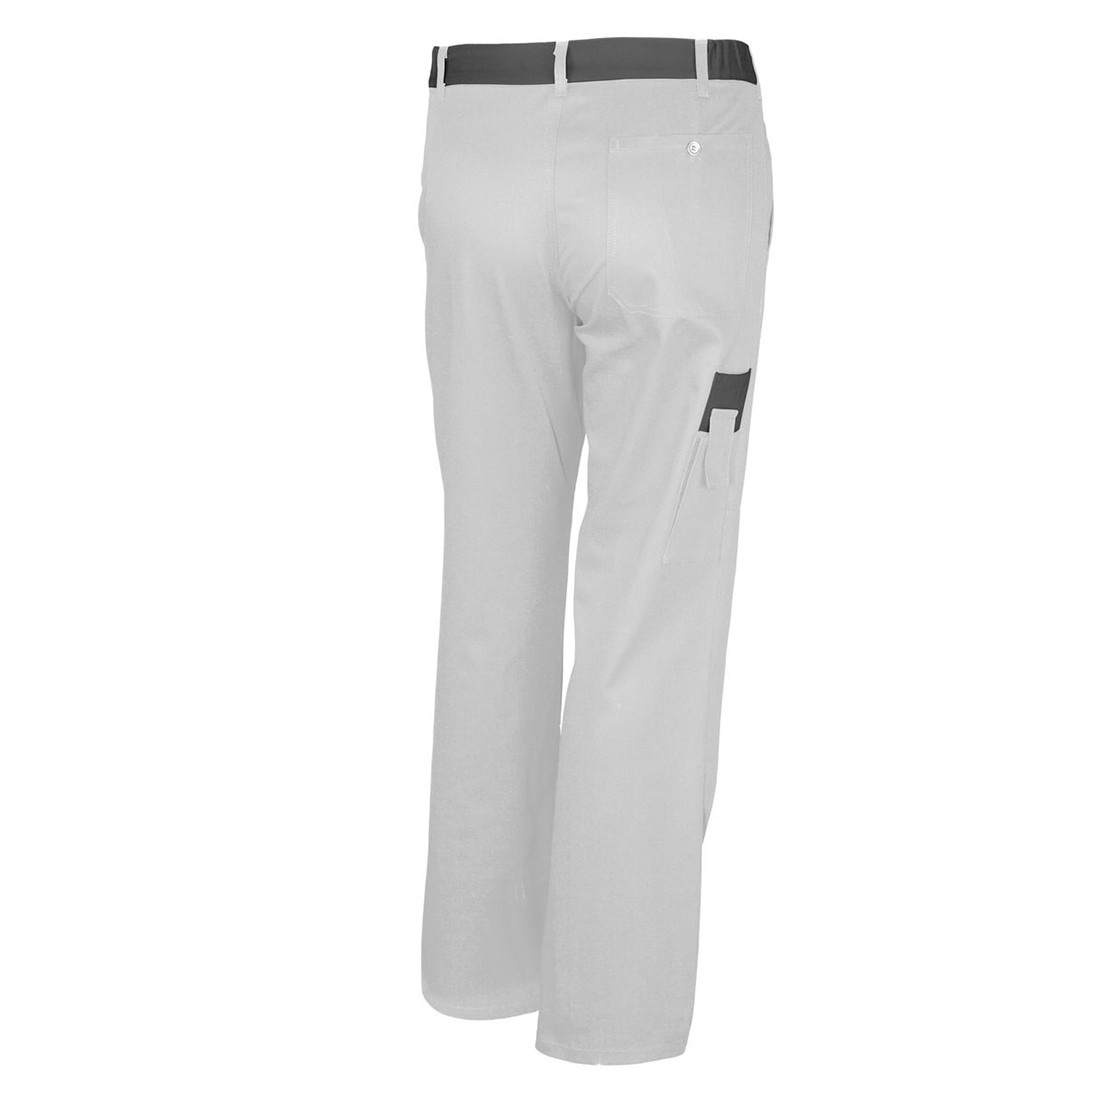 Pantaloni de lucru BASIC BICOLOR - Imbracaminte de protectie